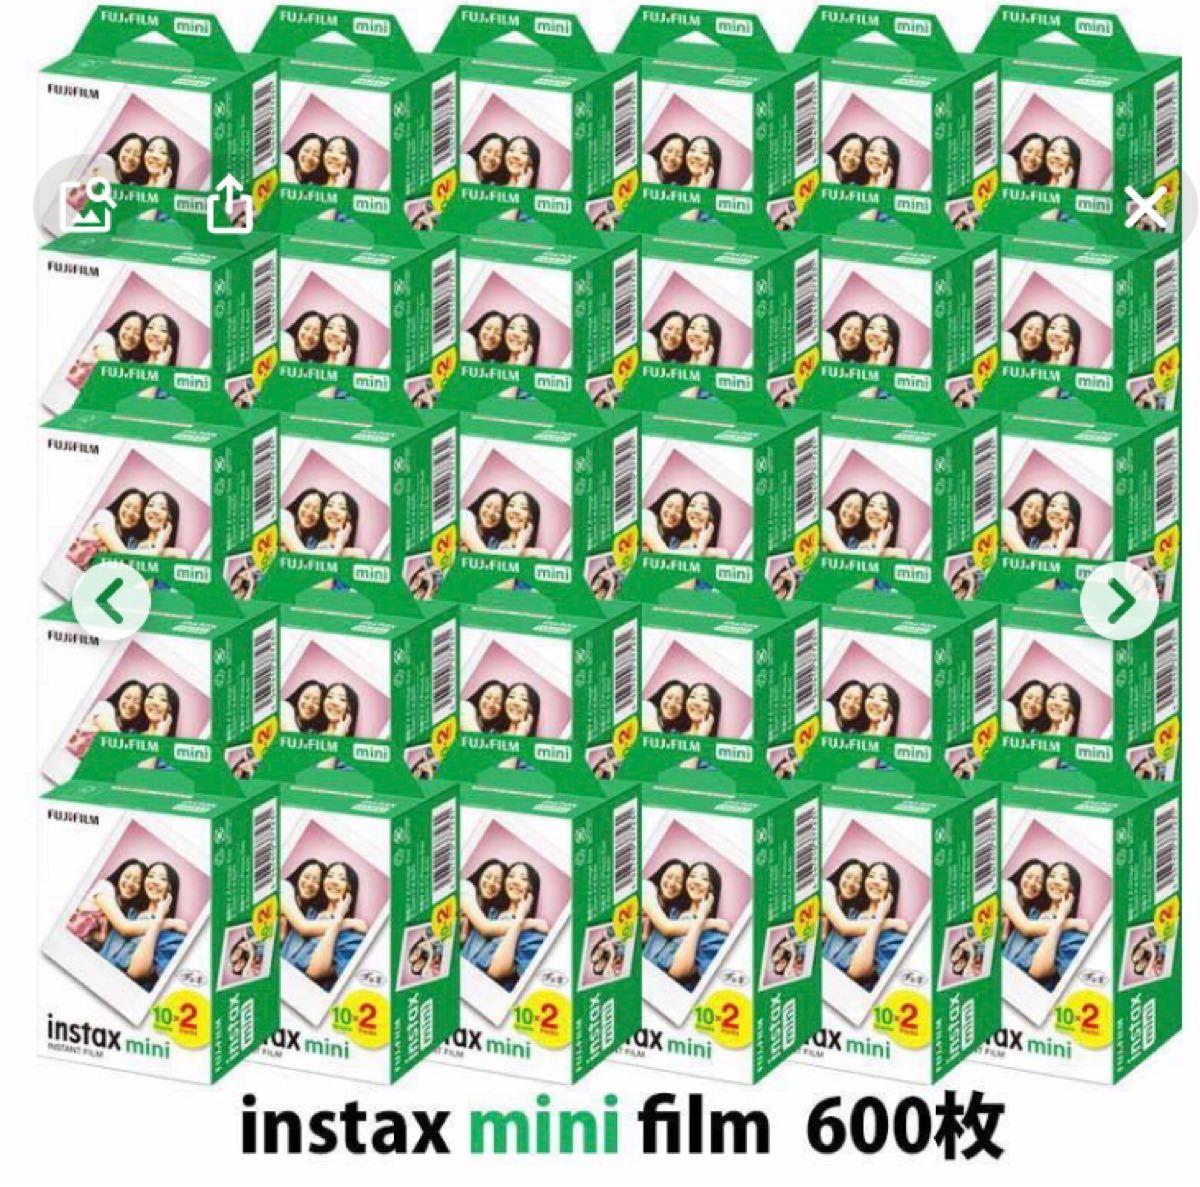 期間限定の激安セール チェキフィルム 60枚 セット 箱なし 10枚入り × FUJI FILM instax mini 送料無料 フジフィルム  インスタックスミニ